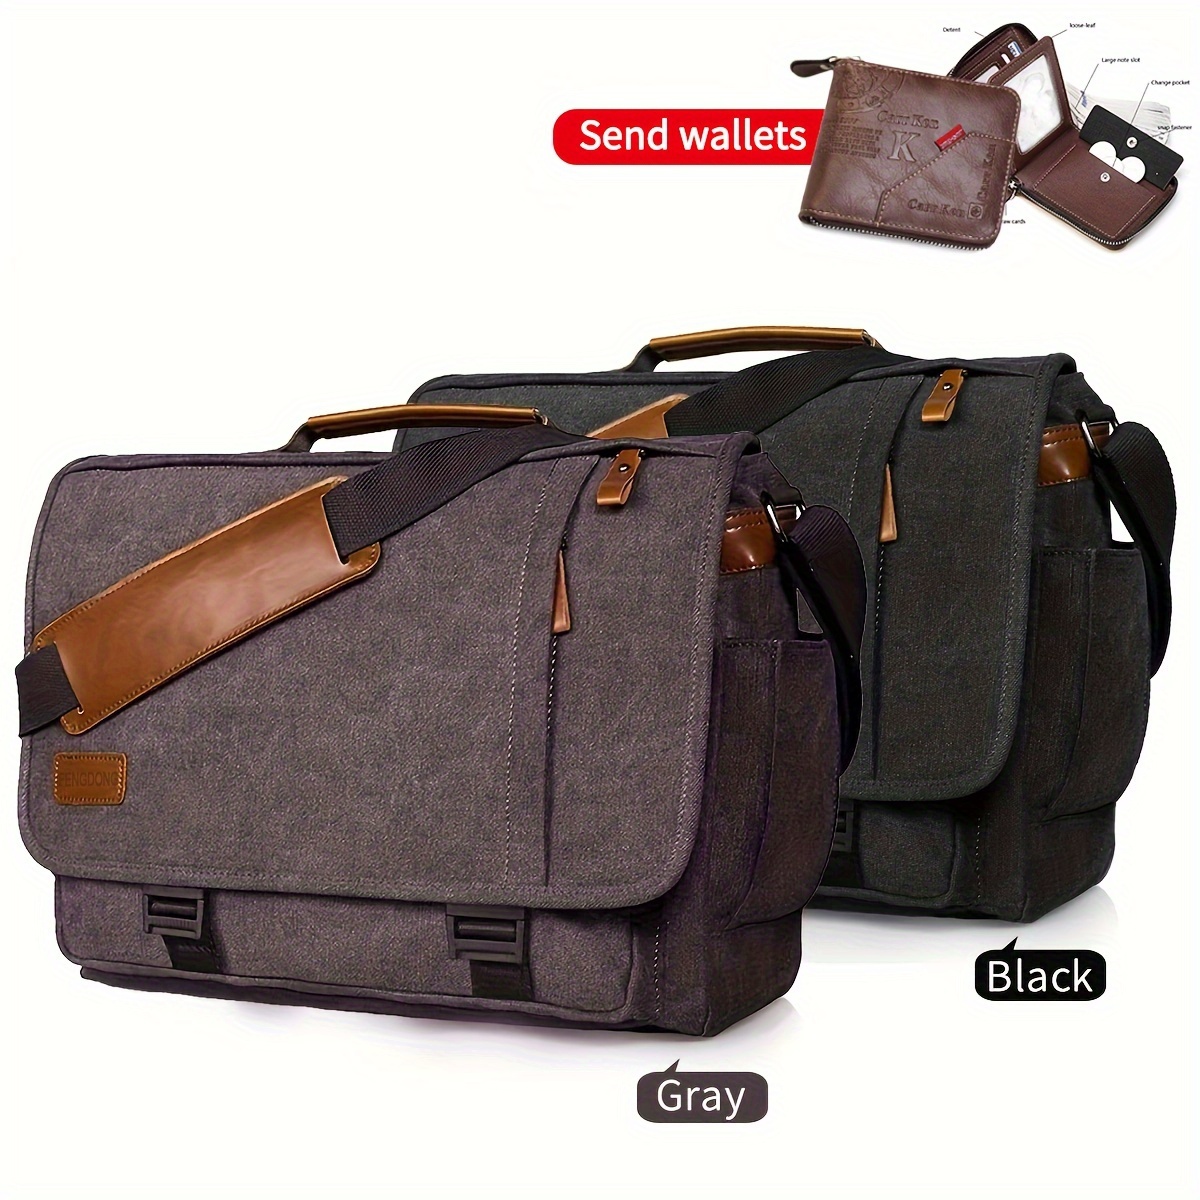  Messenger Bag For Men,Water Resistant Unisex Canvas Shoulder  Bag Fits 14 Inch Laptop Satchel Crossbody Bag for Work and College